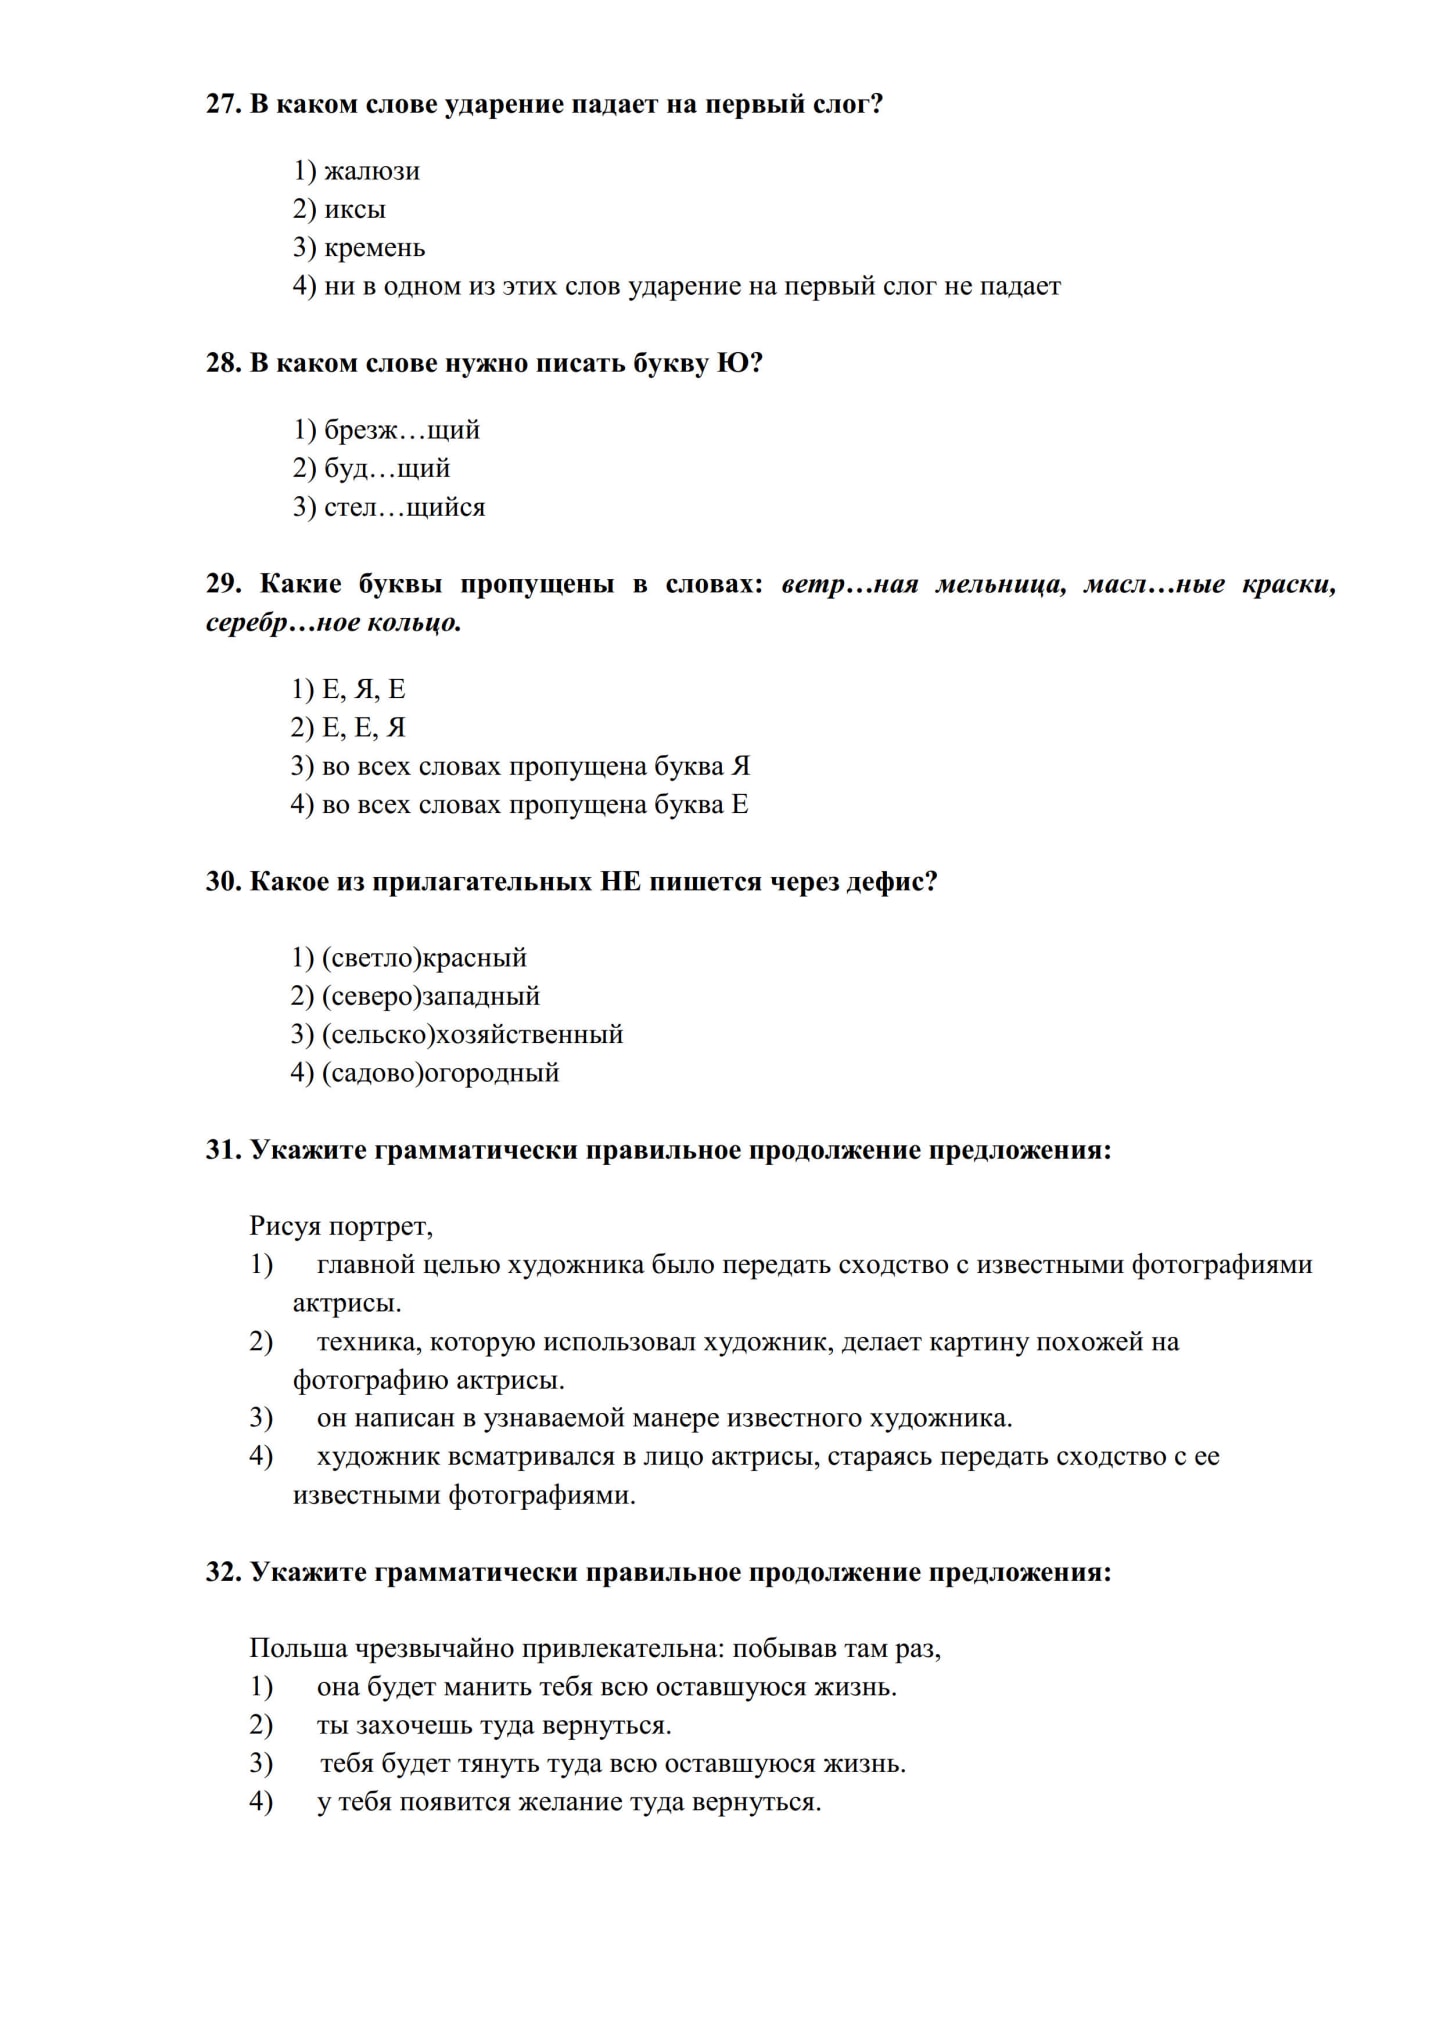 俄罗斯留学|俄罗斯大学|入学考试真题|入学考试|俄罗斯大学入学